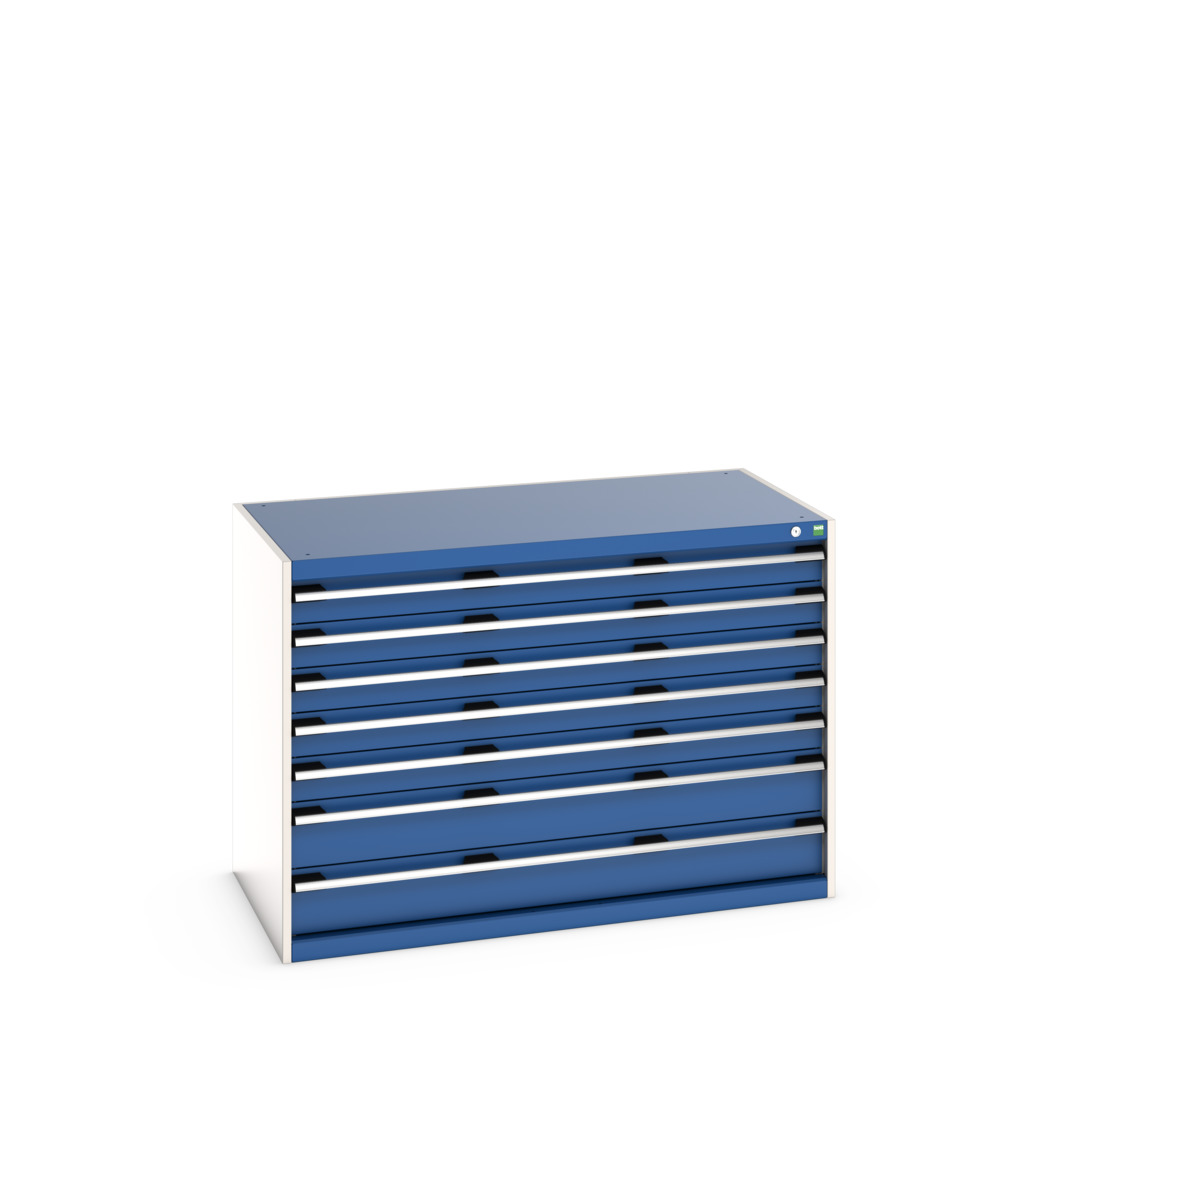 40030088.11V - cubio drawer cabinet